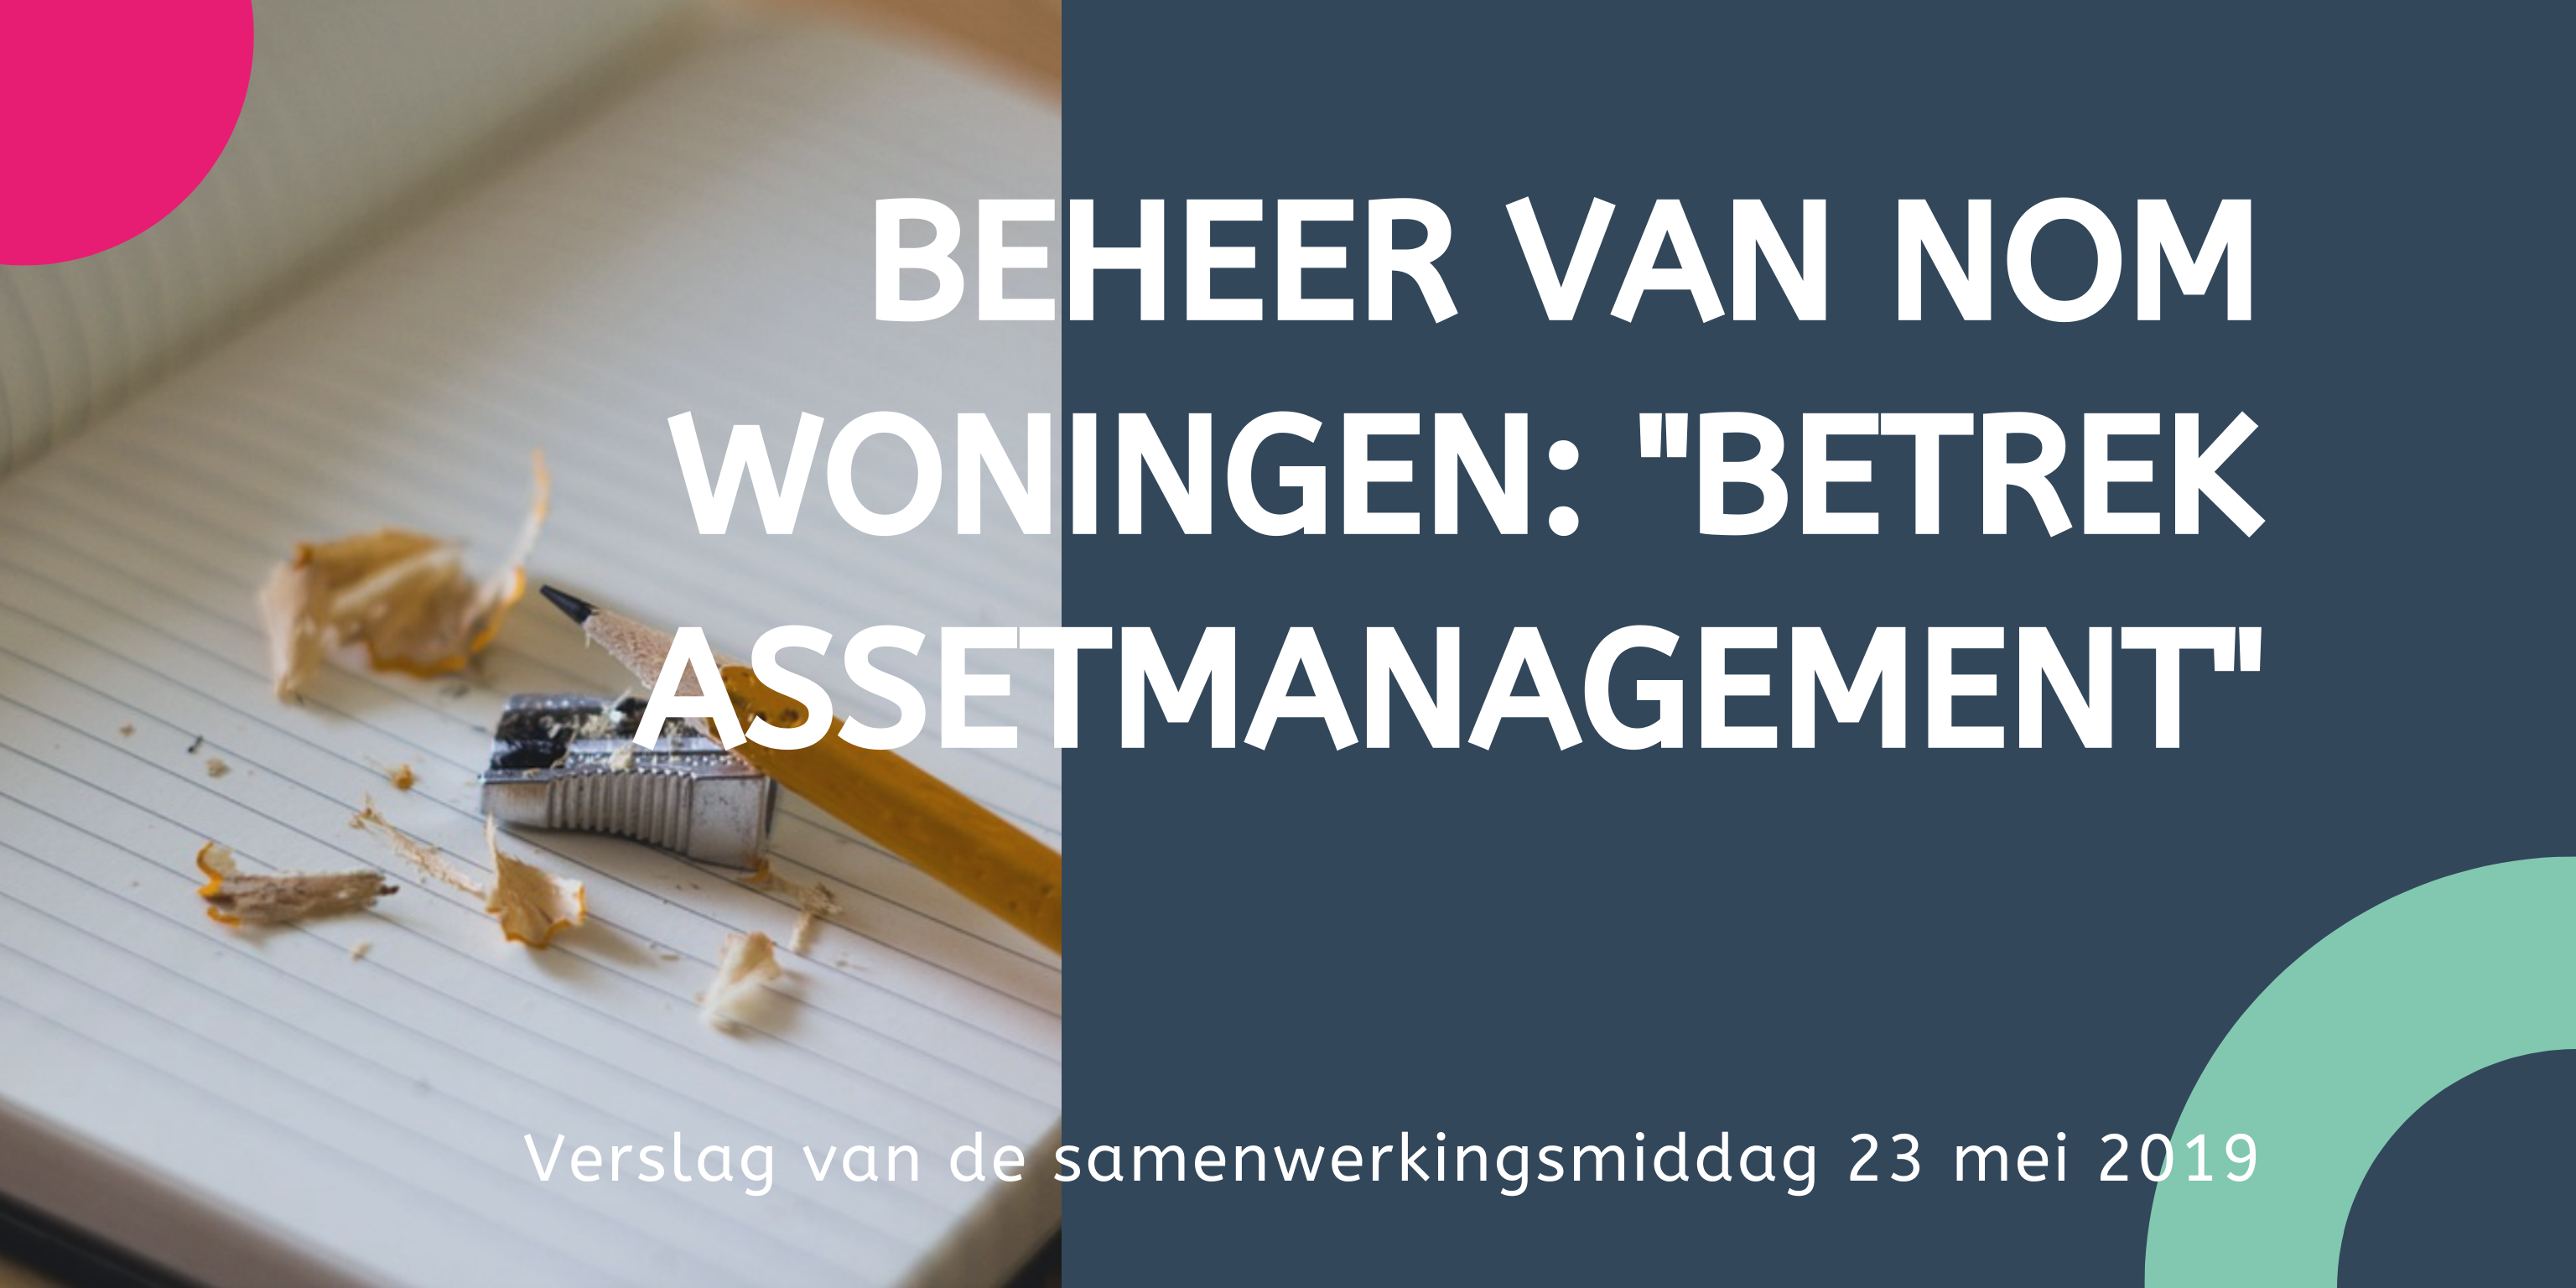 Bheer van NOM woningen betrek assetmanagement